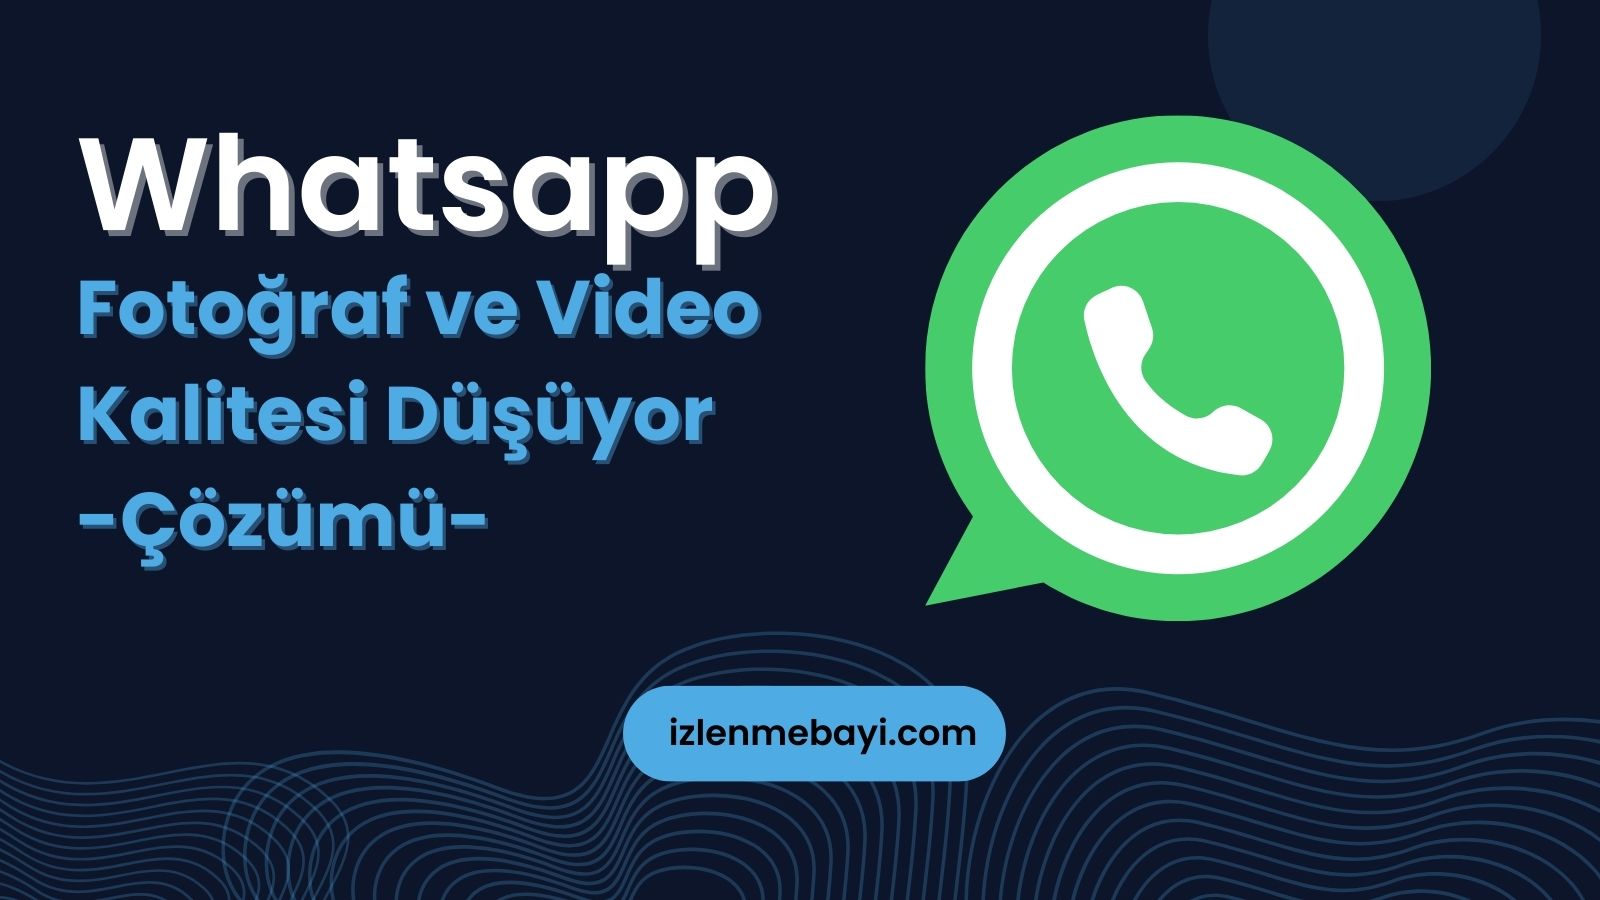 Whatsapp Fotoğraf ve Video Kalitesi Düşüyor Çözüm Yöntemleri